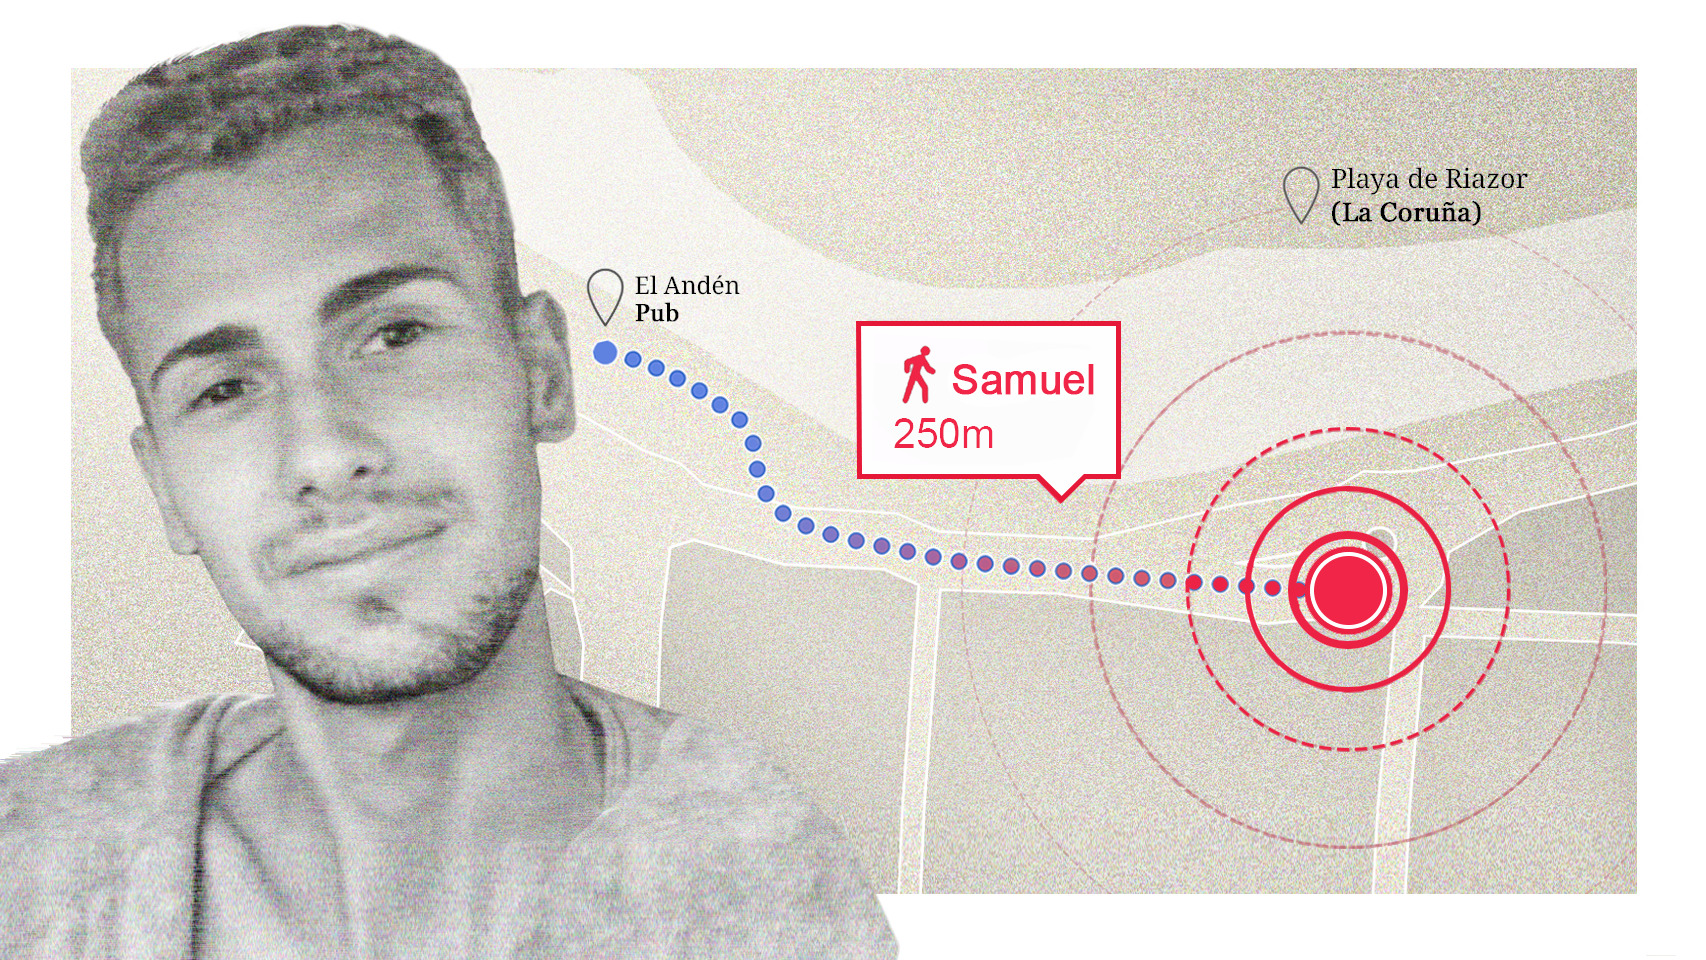 Los asesinos de Samuel lo persiguieron 150 metros y le golpearon durante seis minutos hasta matarlo